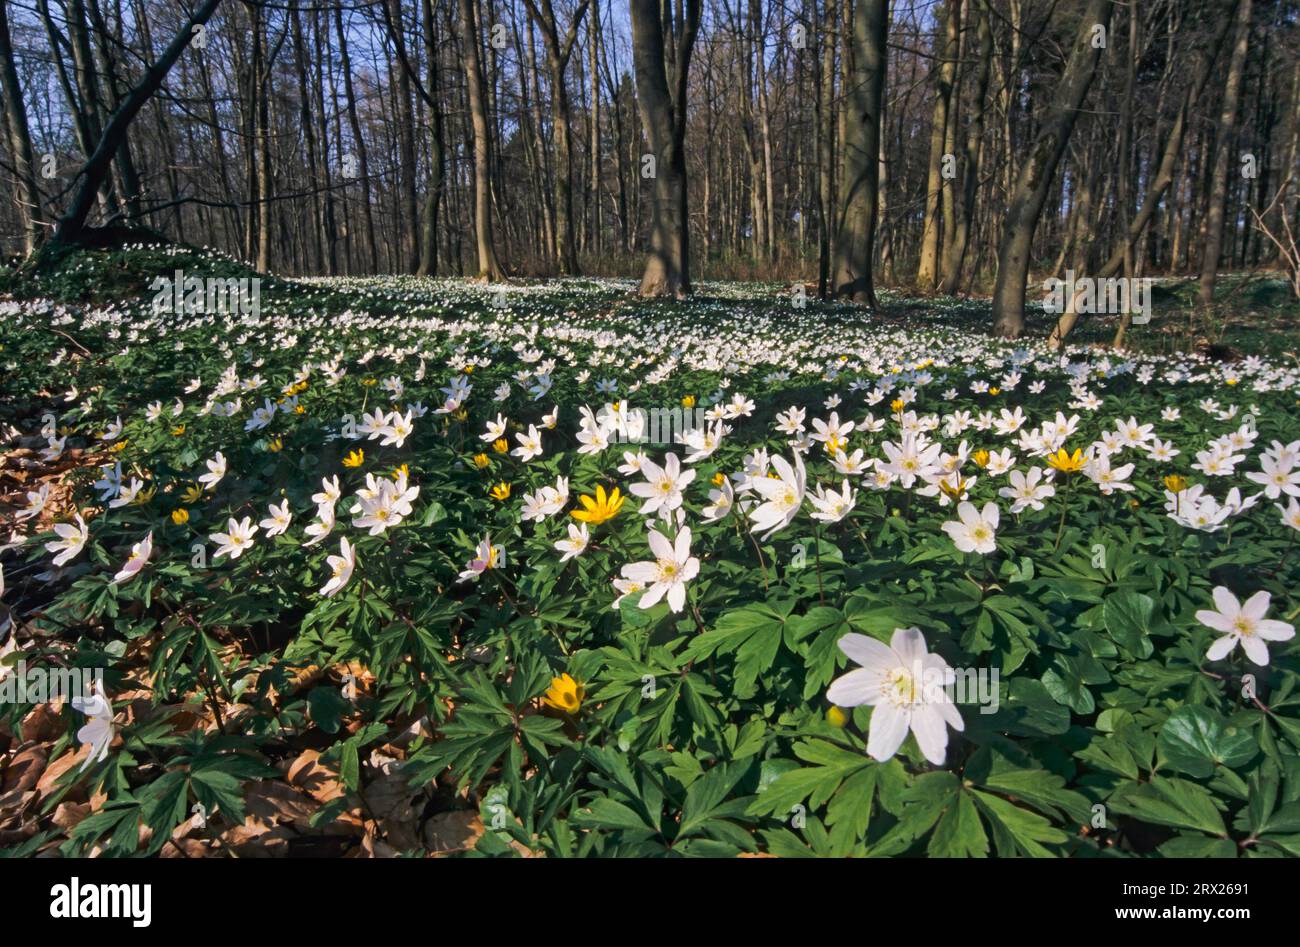 L'anémone des bois (Anemone nemorosa) forme parfois de grands tapis fleuris dans les forêts feuillues de feuillus (Hexenbluemchen), l'anémone des bois est un début de printemps Banque D'Images